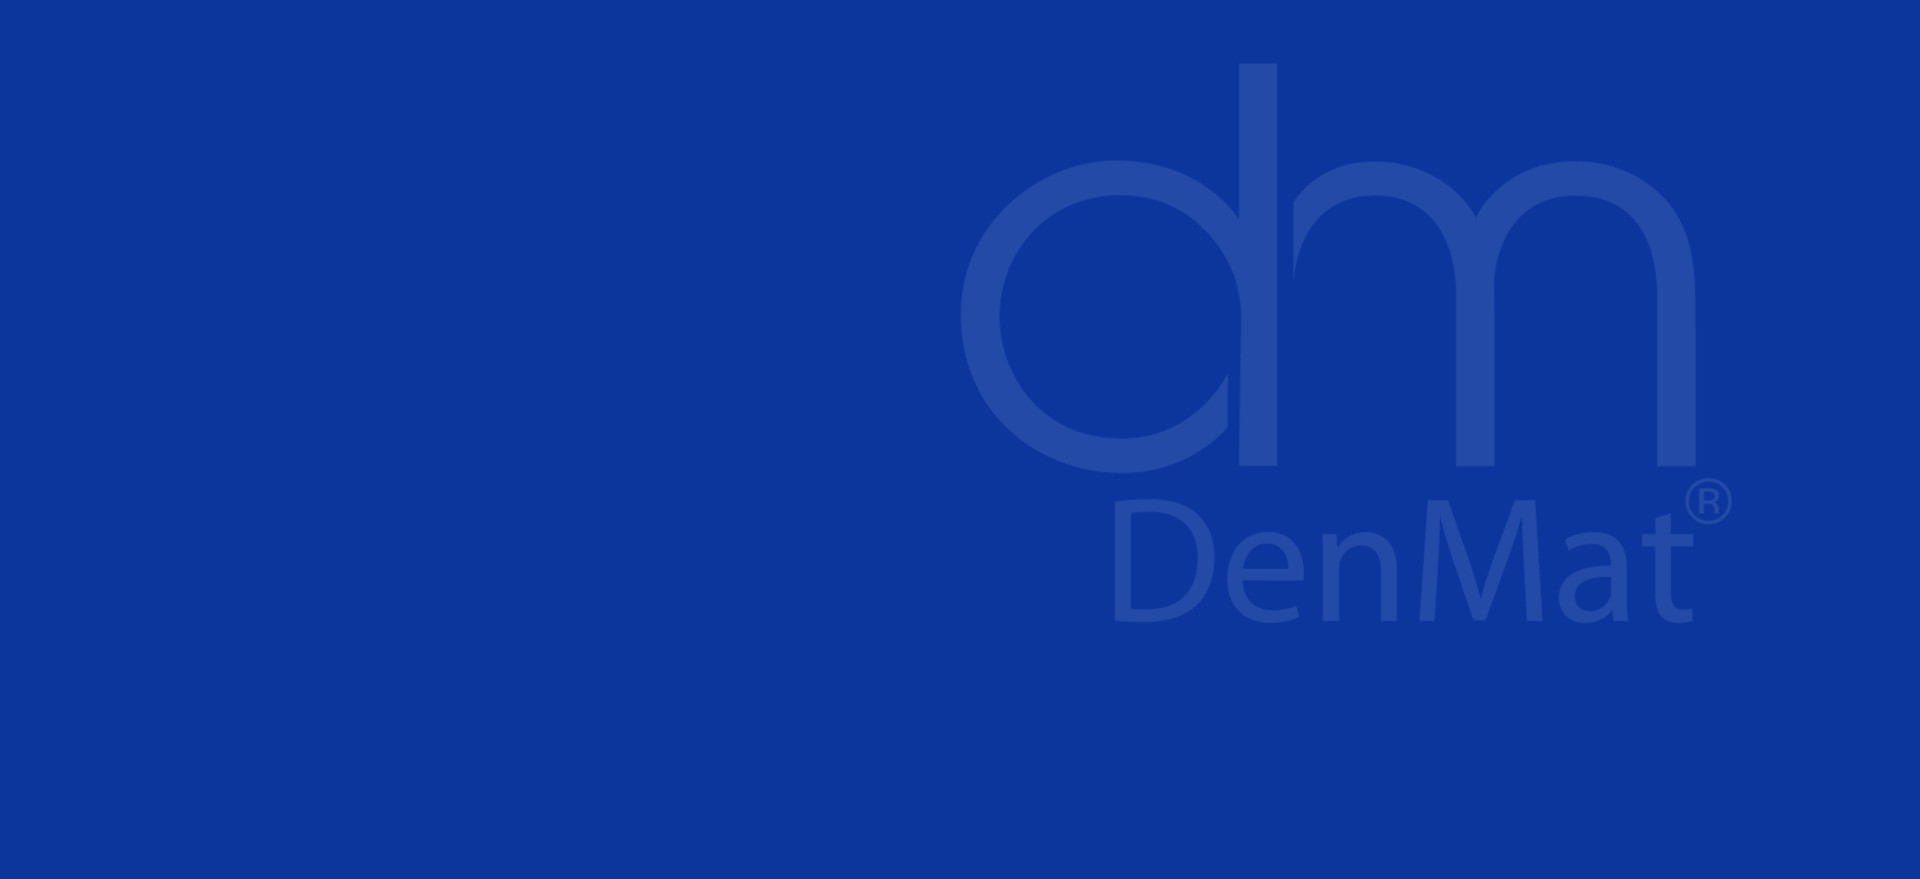 DenMat-Header-Graphic